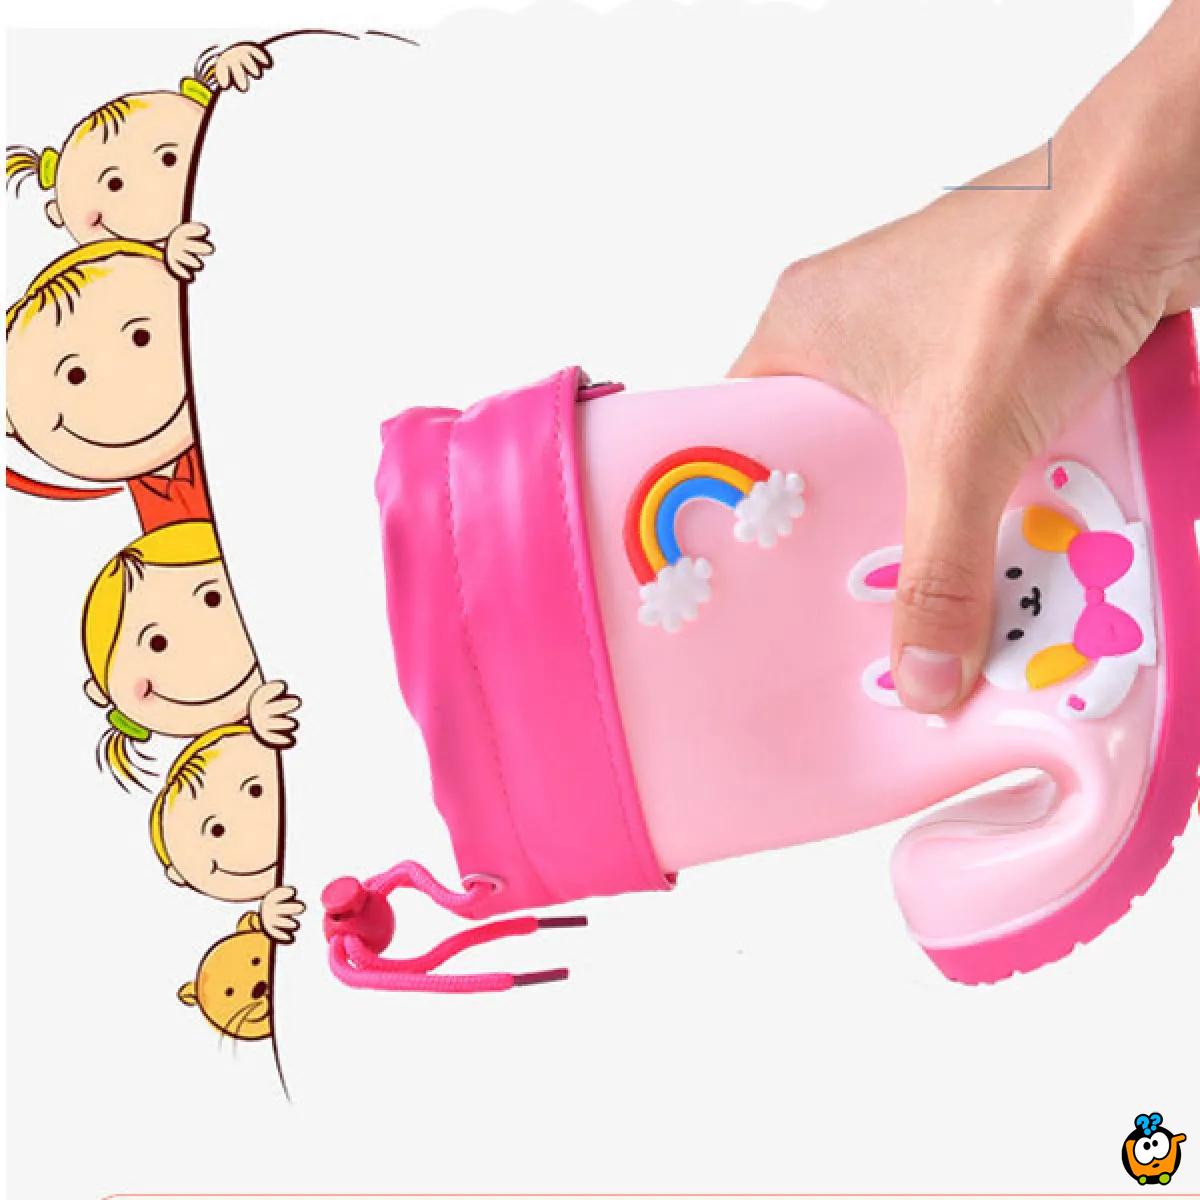 Little tiger - Teget gumene čizme za decu sa toplim uloškom